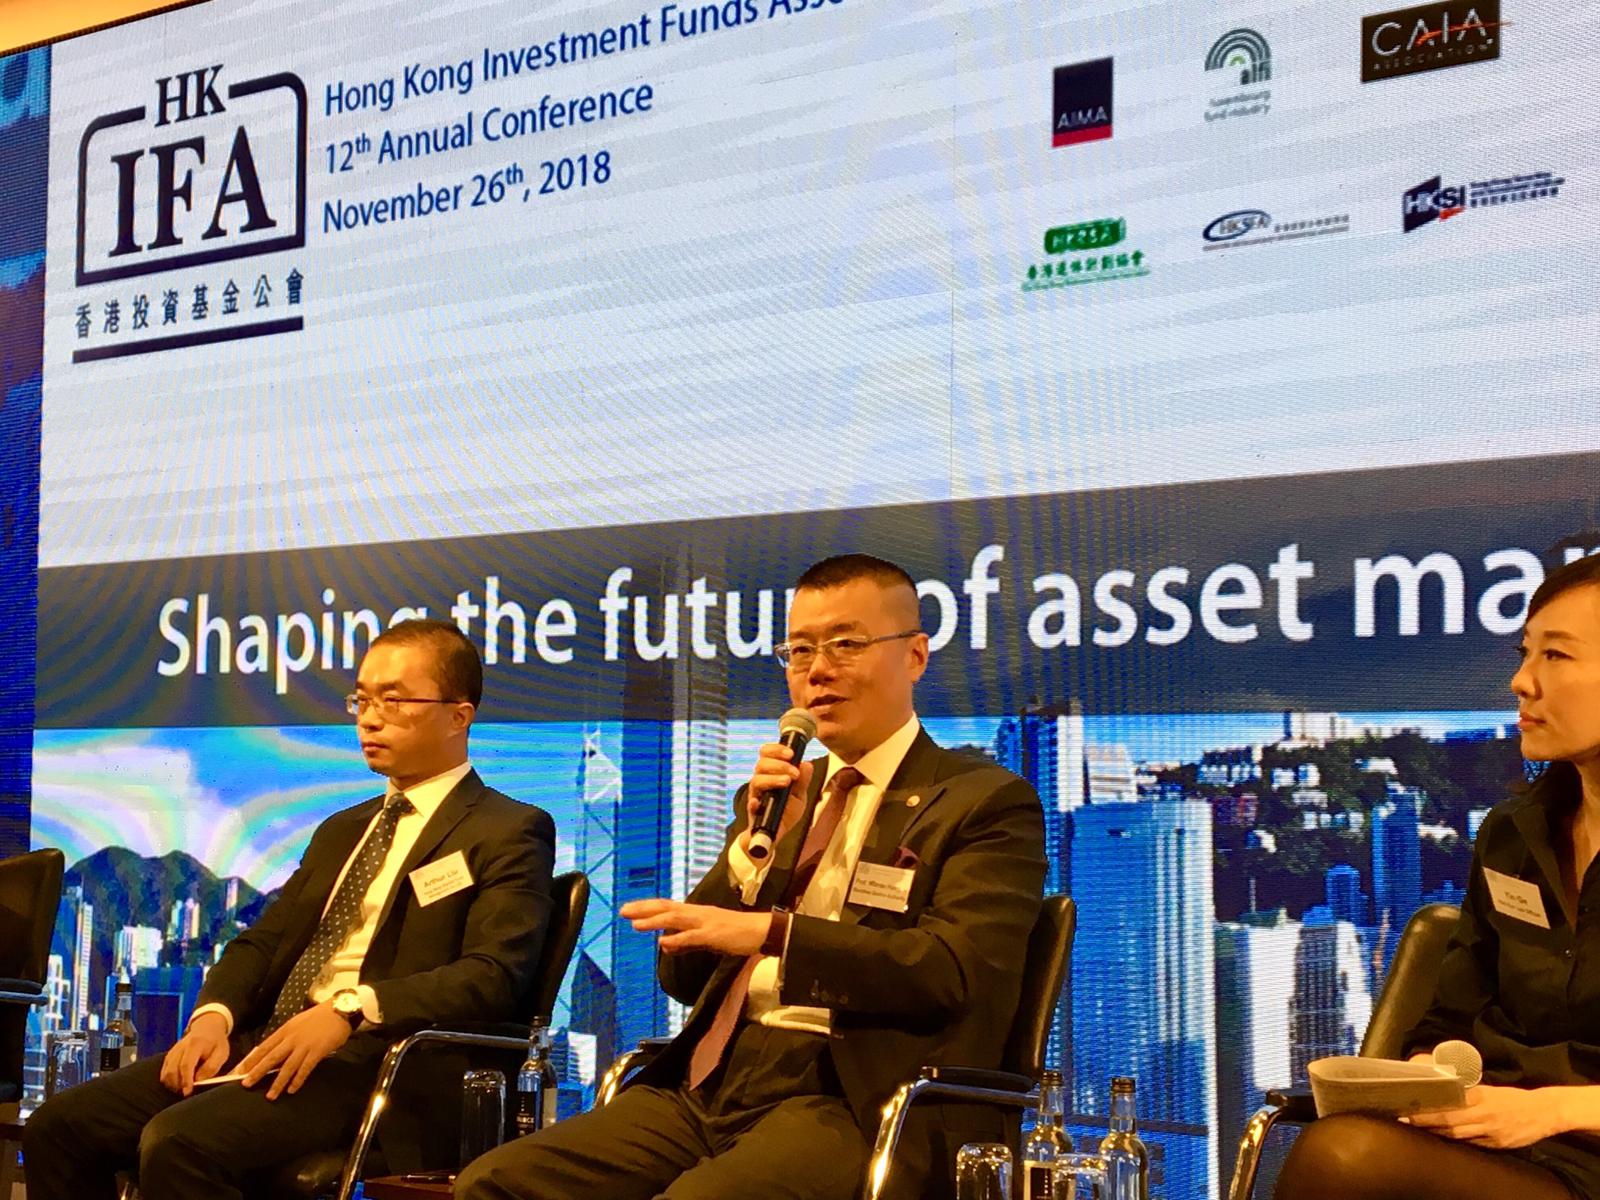 2018年11月26日Hong Kong Investment Funds Association 12th Annual Conference